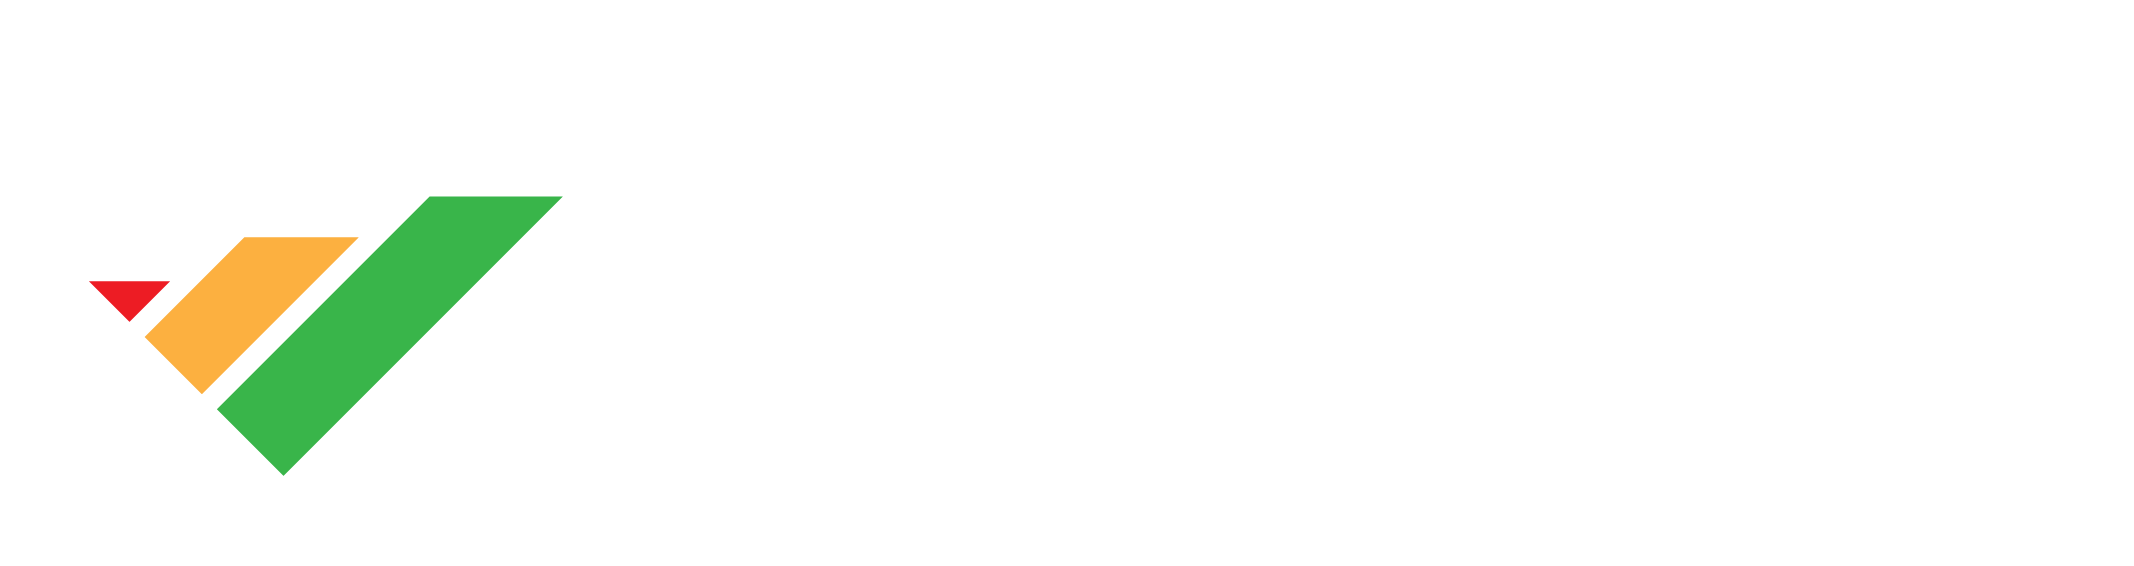 Project SME